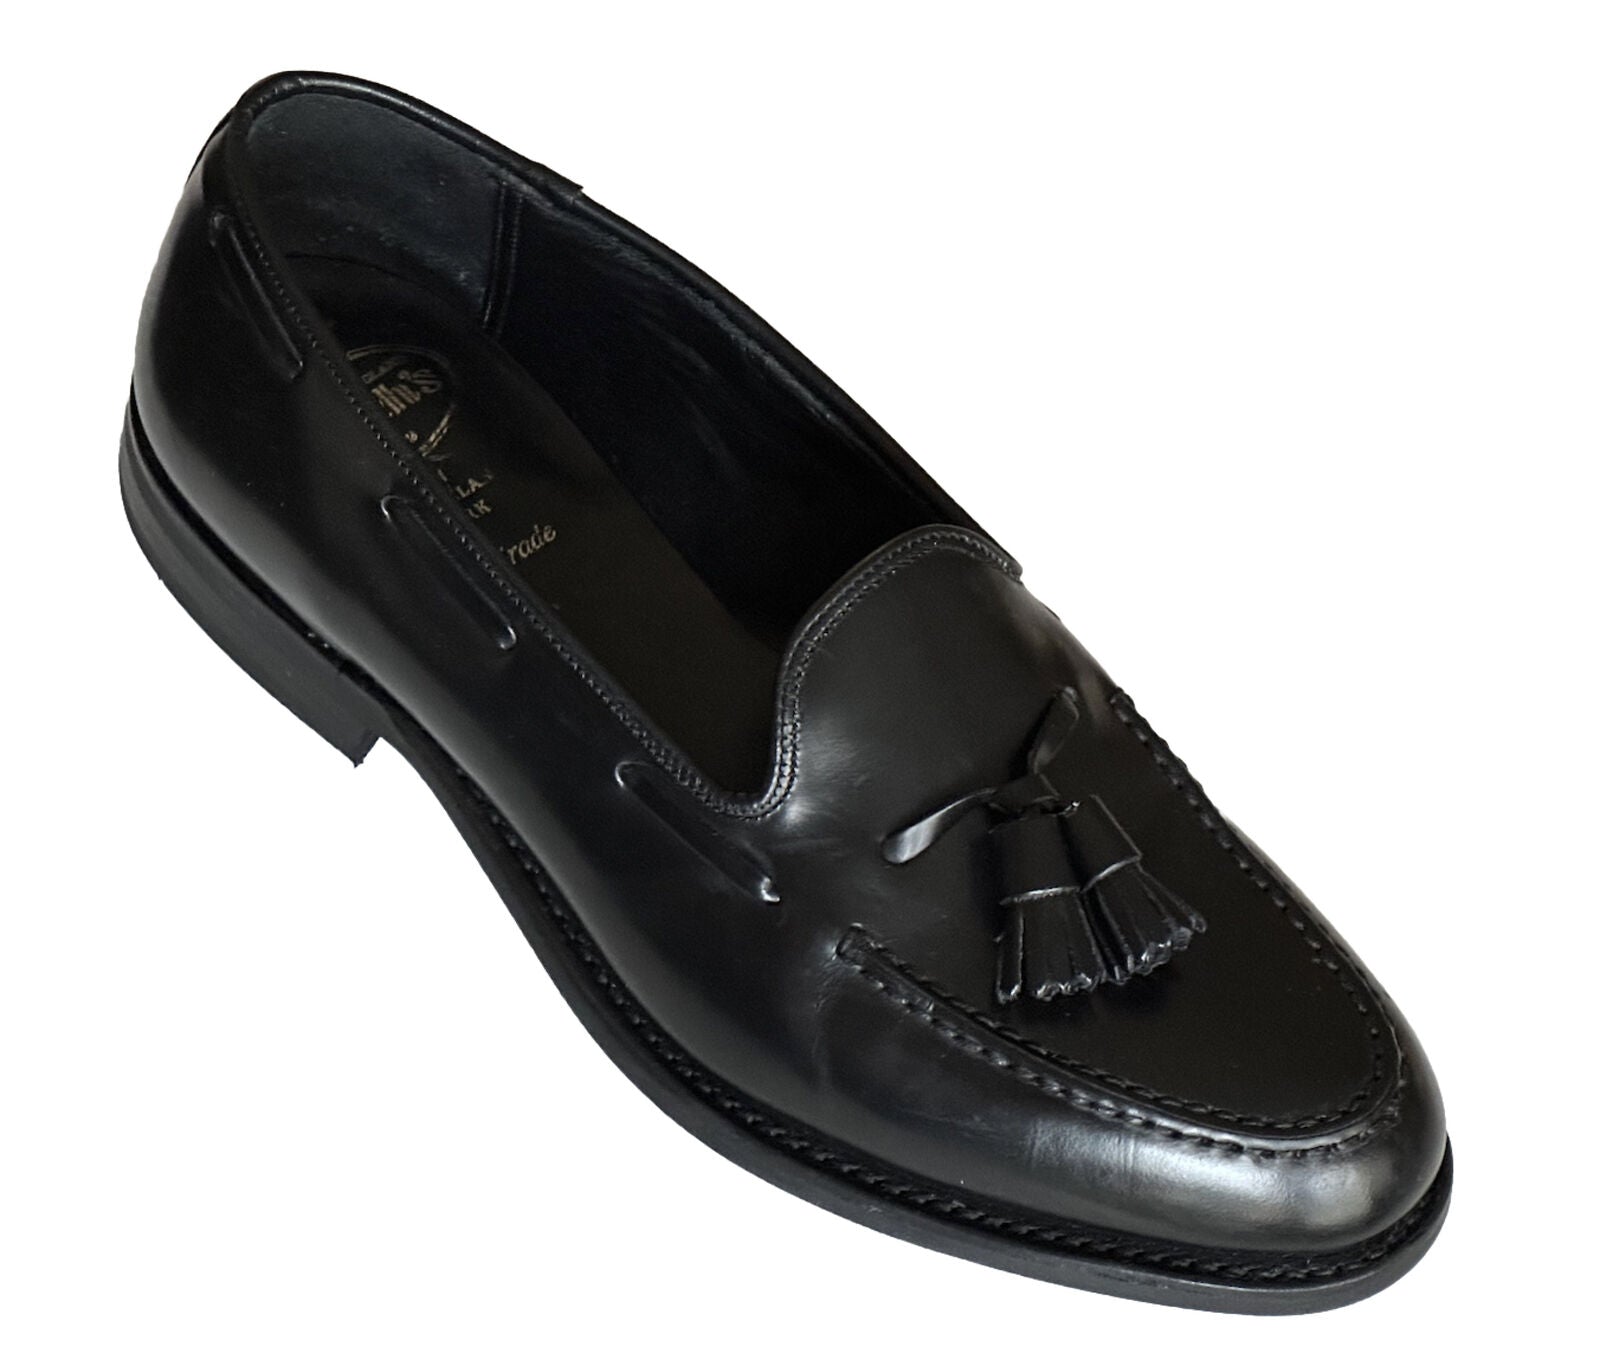 Мужские черные кожаные туфли-шиканы Church's Binder 10 US EDC040 UK 